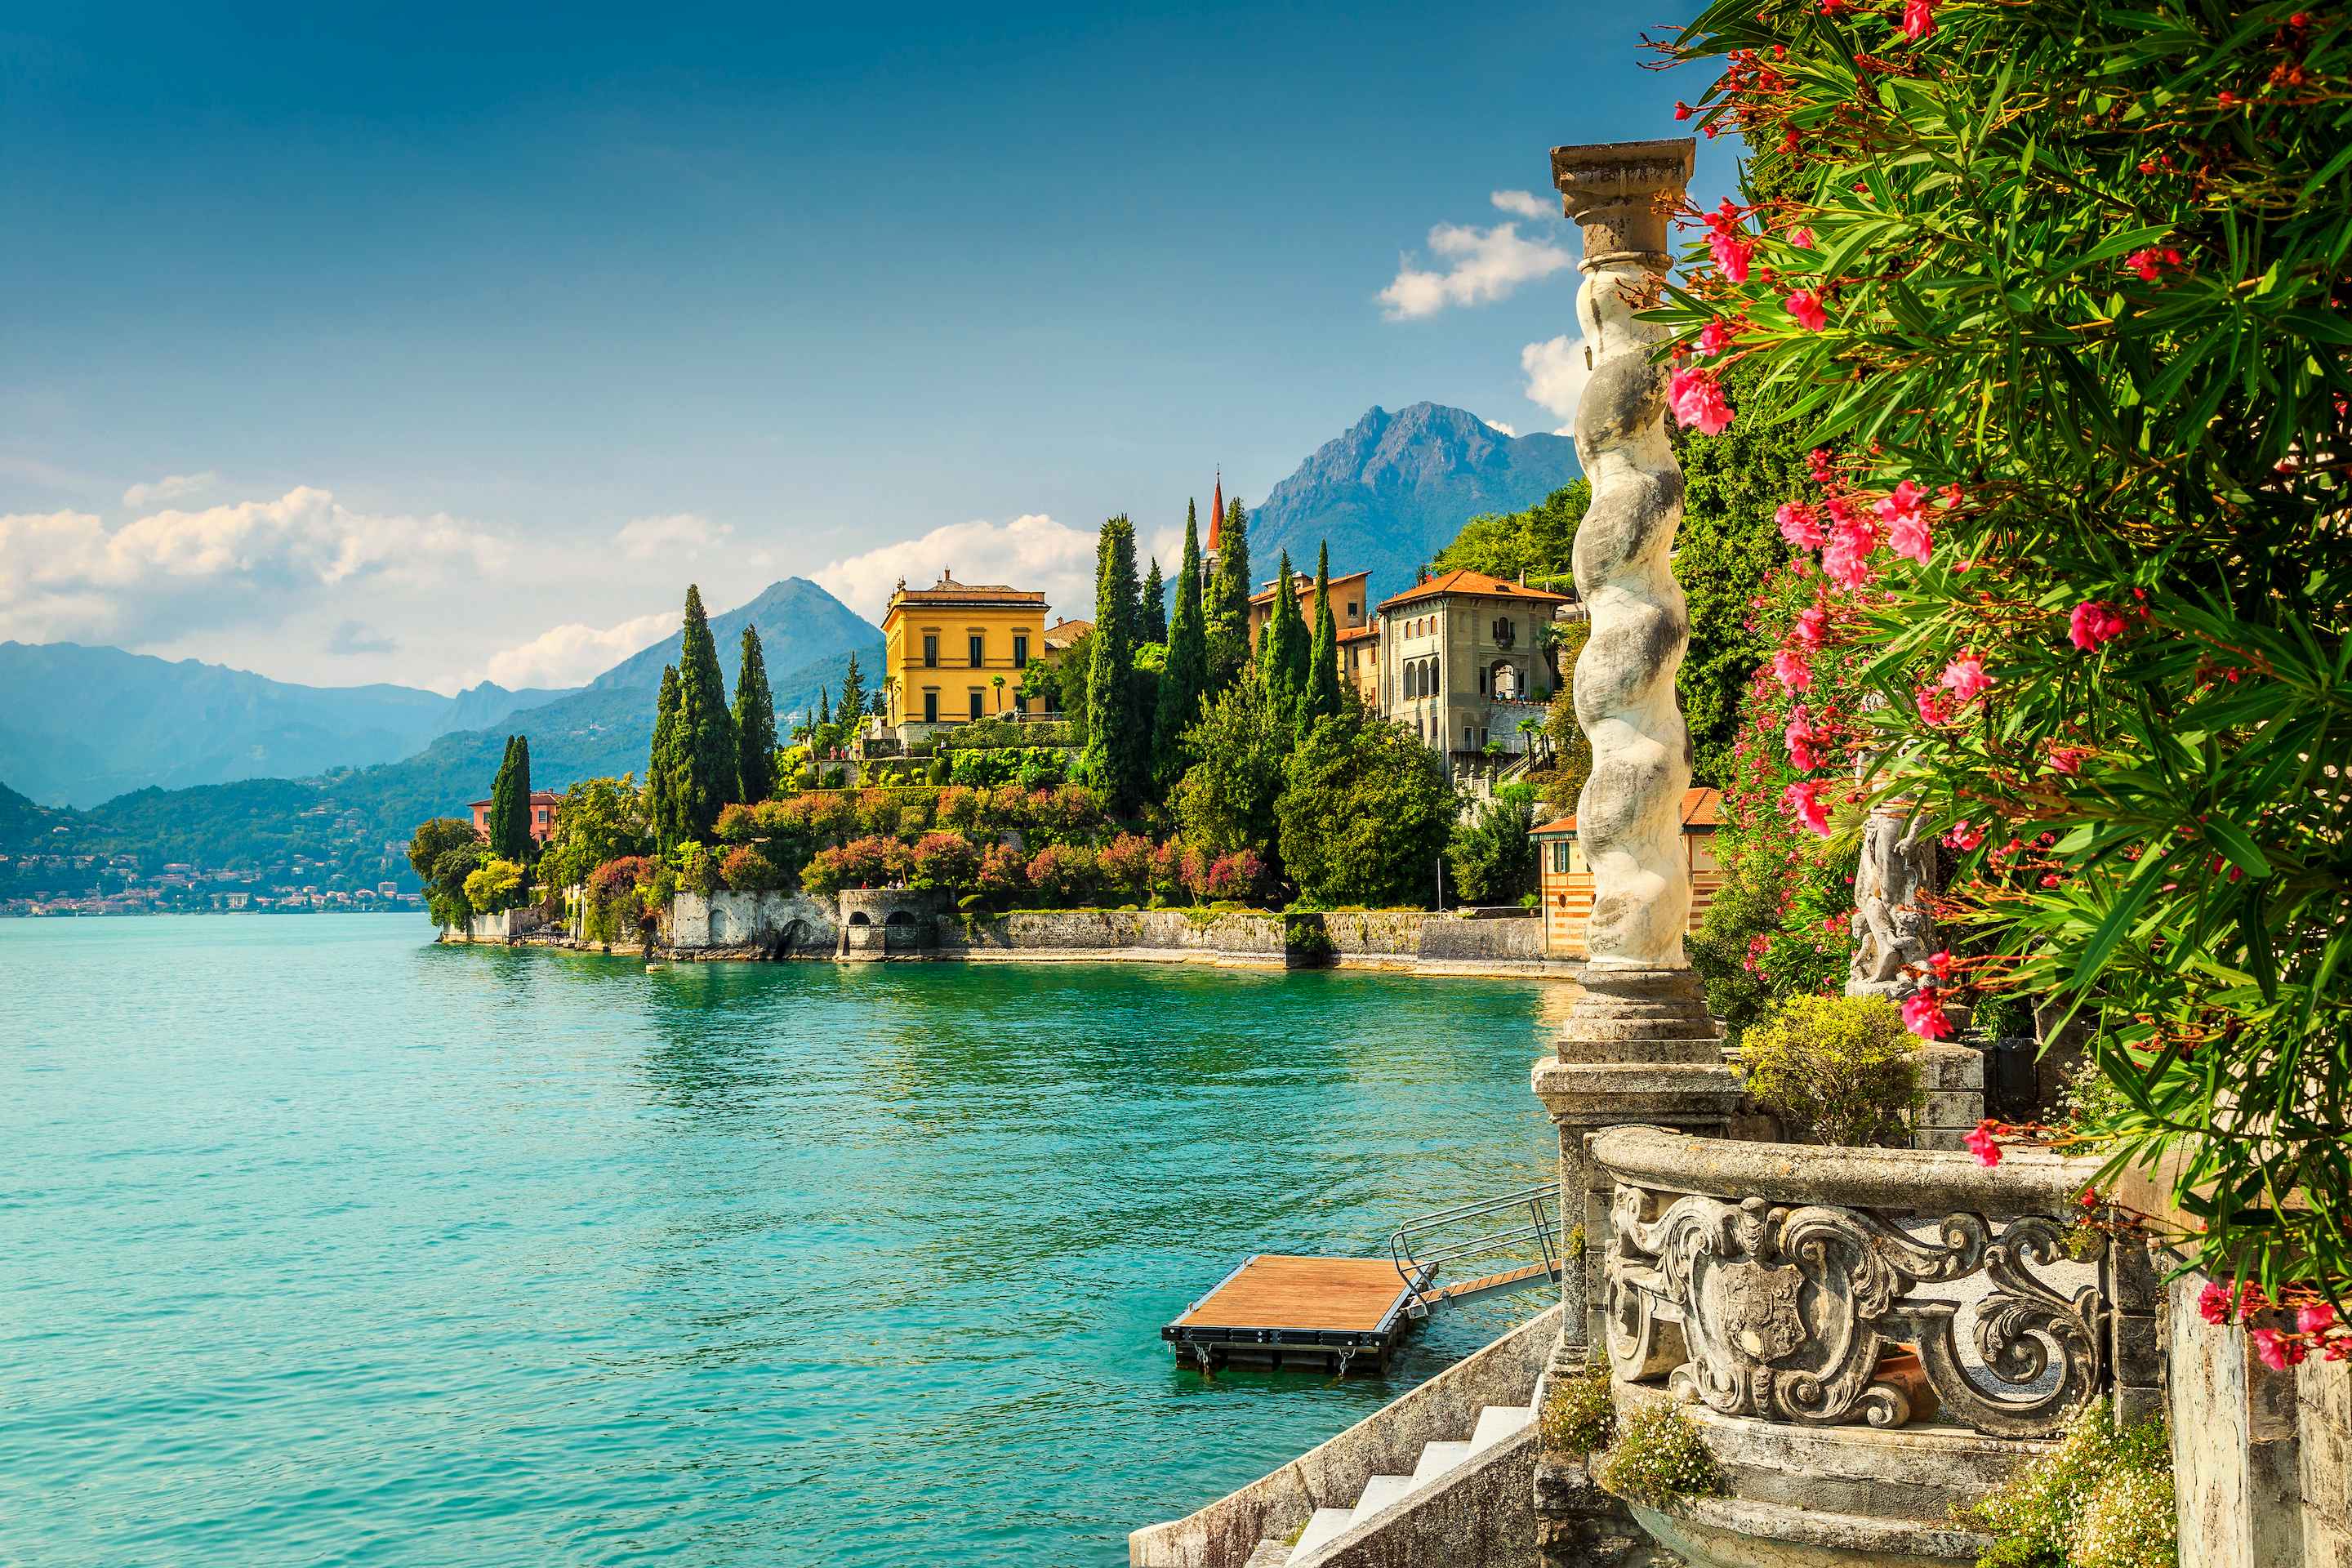 Lake Como vacation rentals